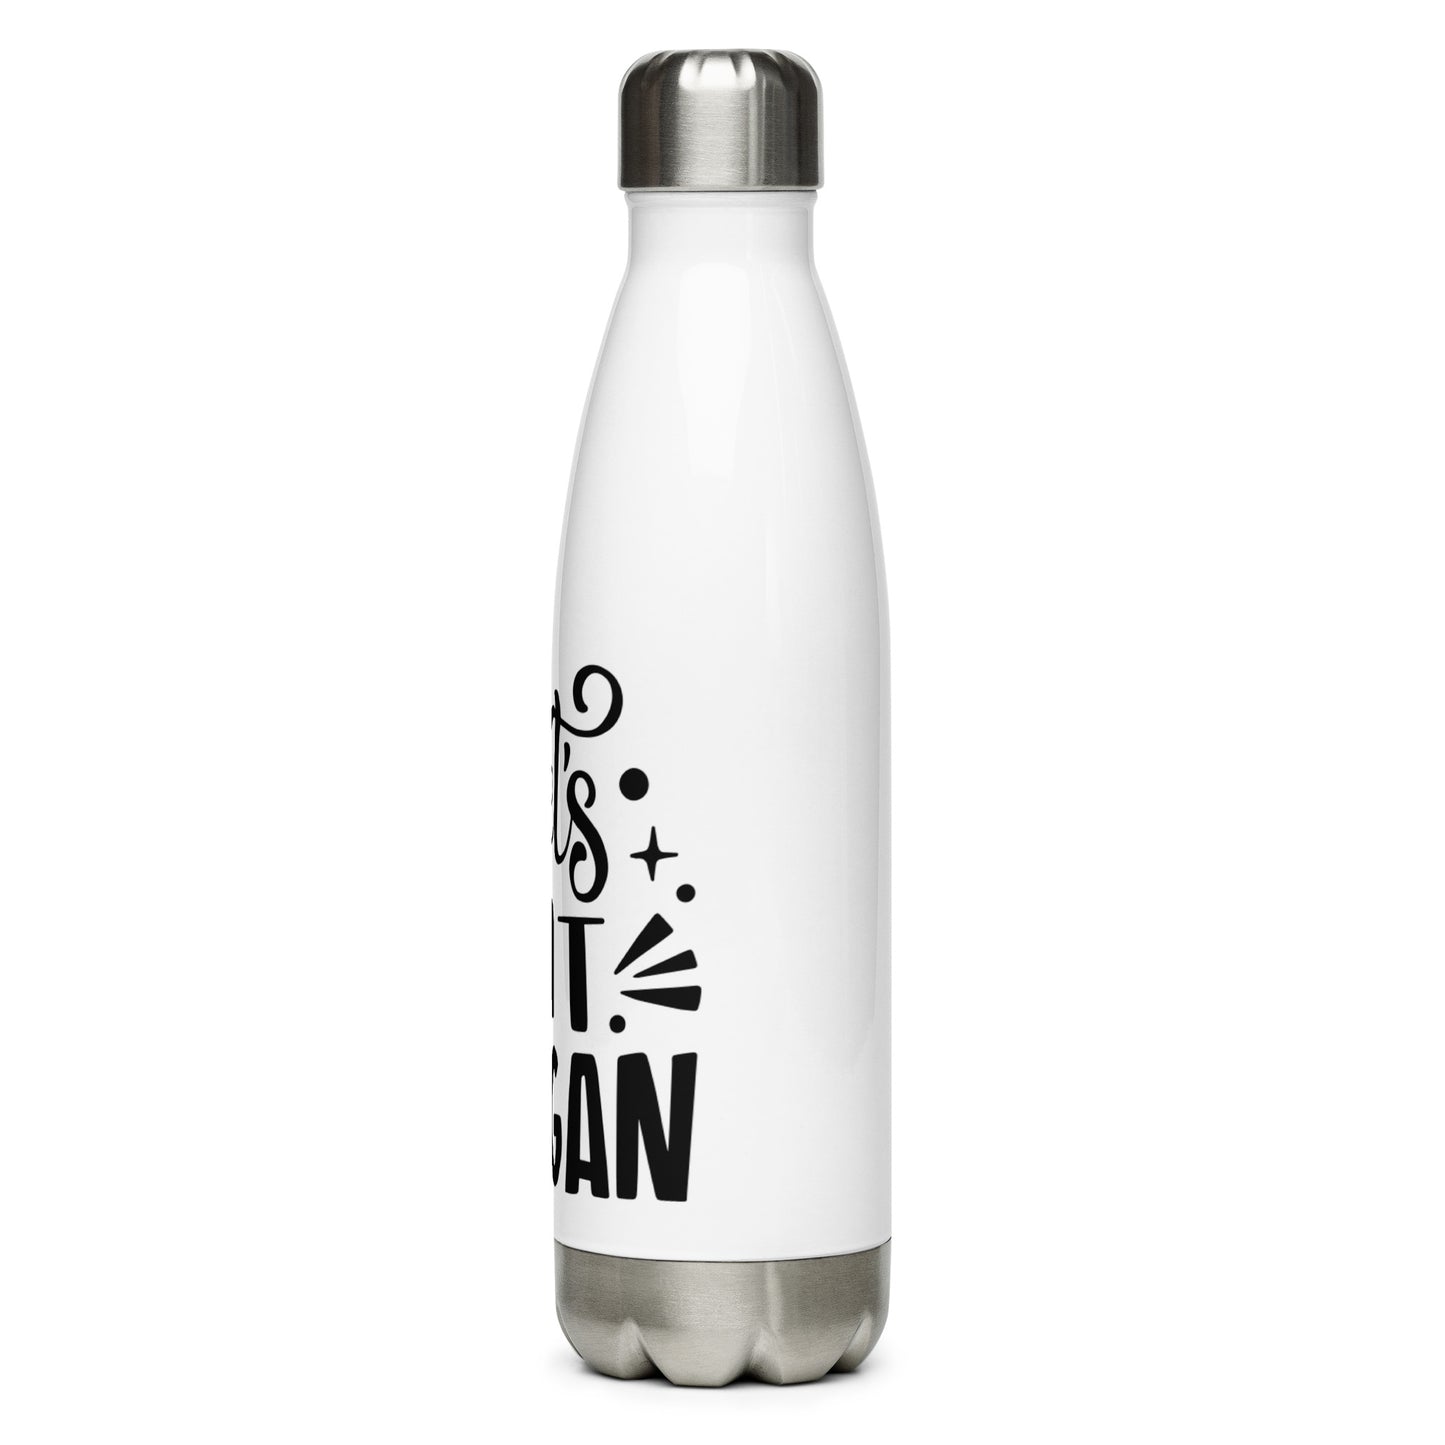 Let's Eat Vegan - Stainless Steel Water Bottle